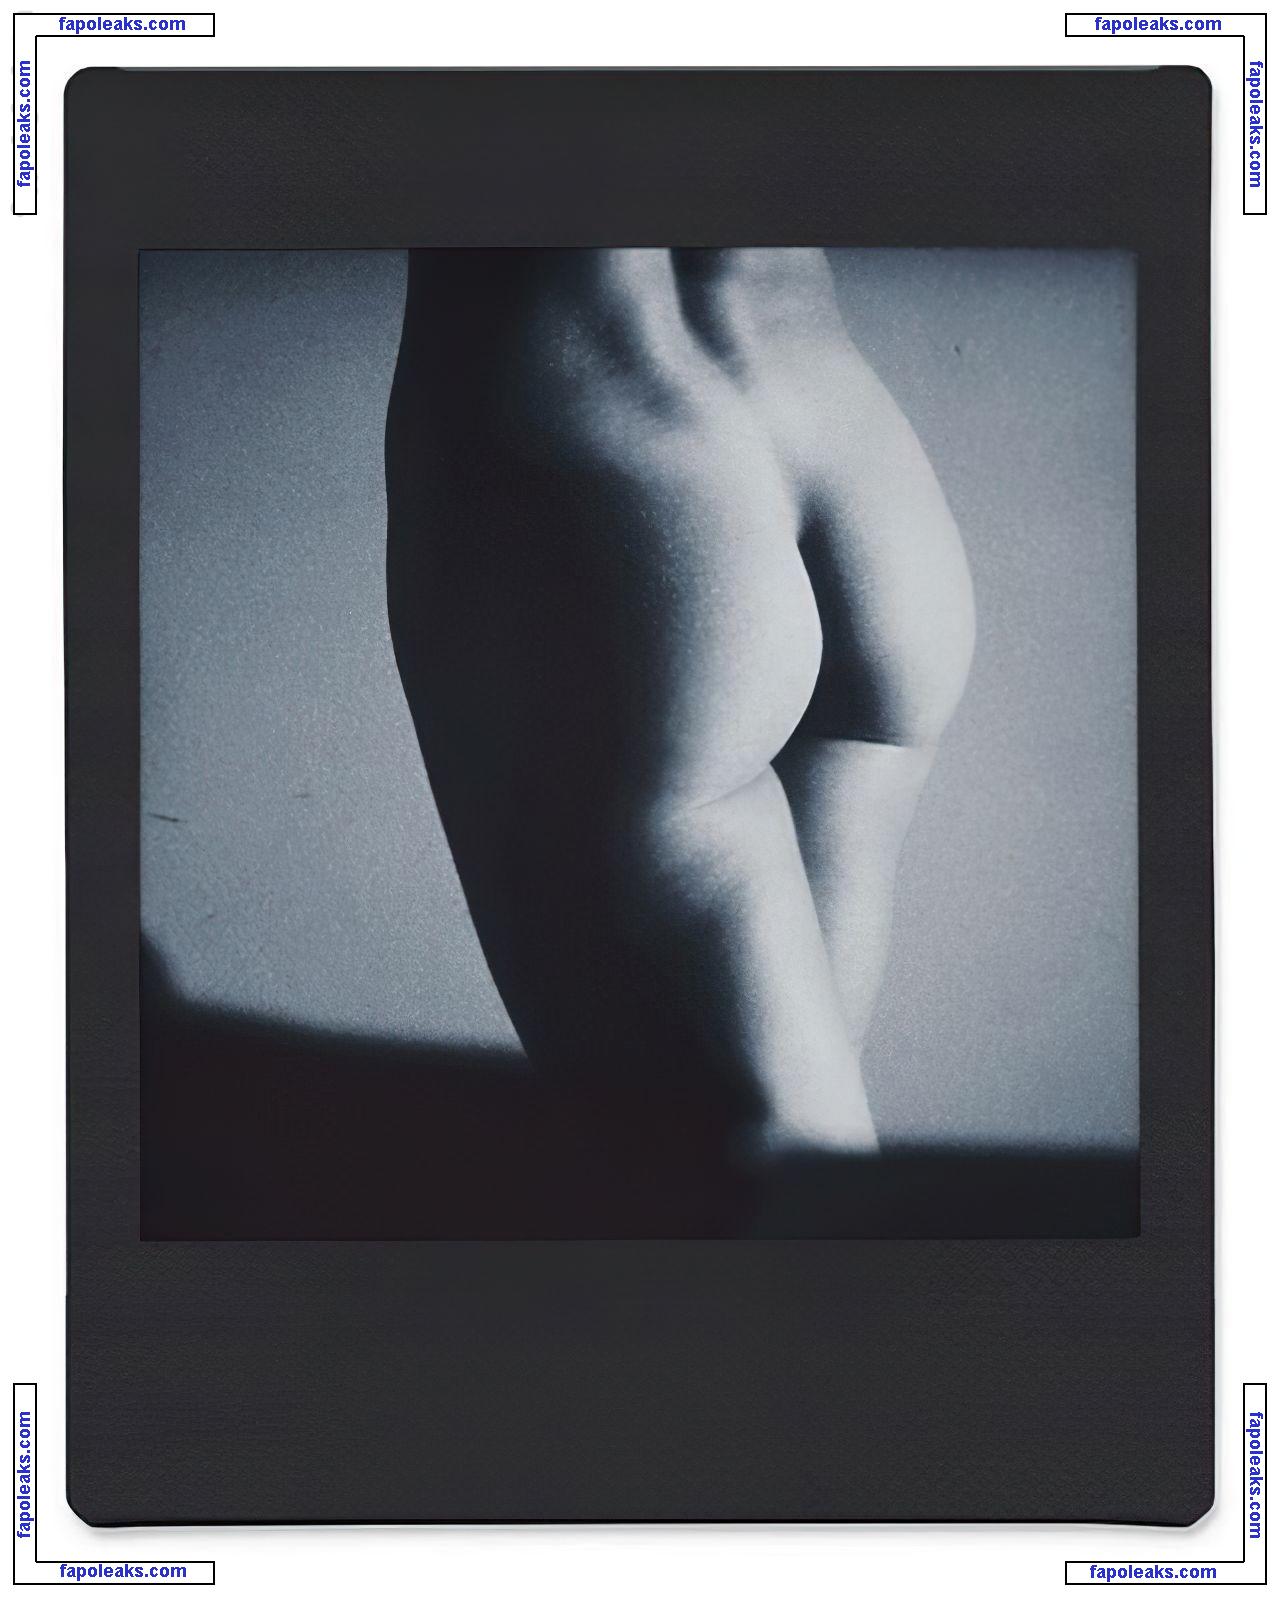 Mimi Elashiry / mimielashiry nude photo #0220 from OnlyFans